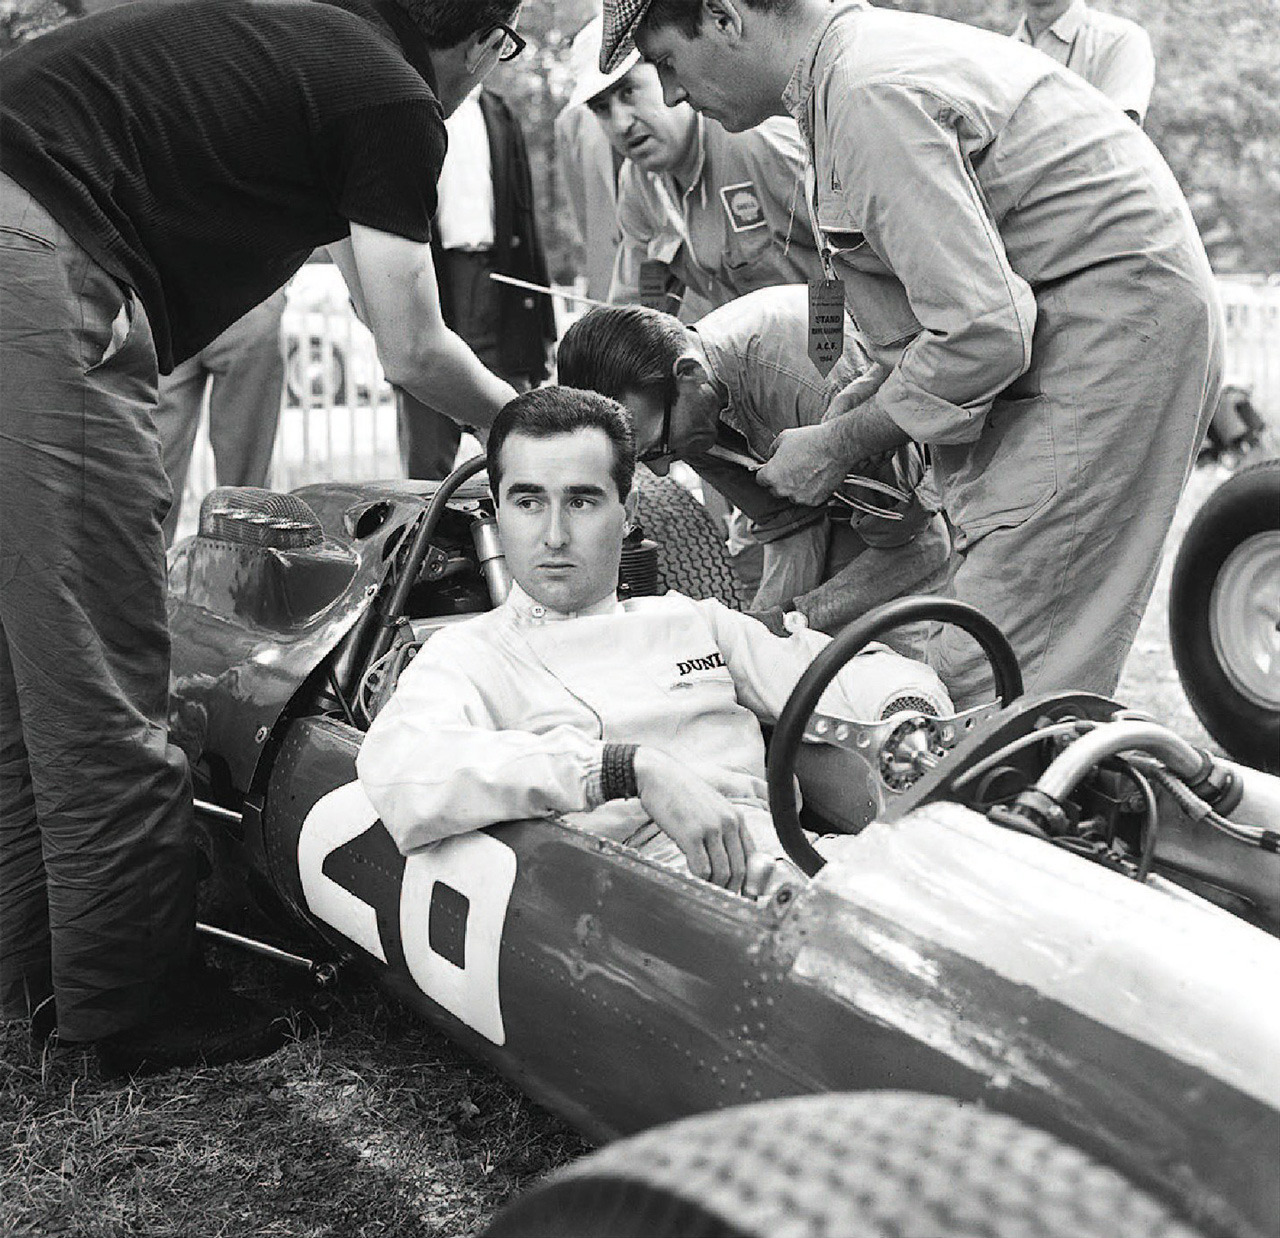 Lorenzo Bandini, Ferrari 158, in Rouen-Les-Essarts in 1964.